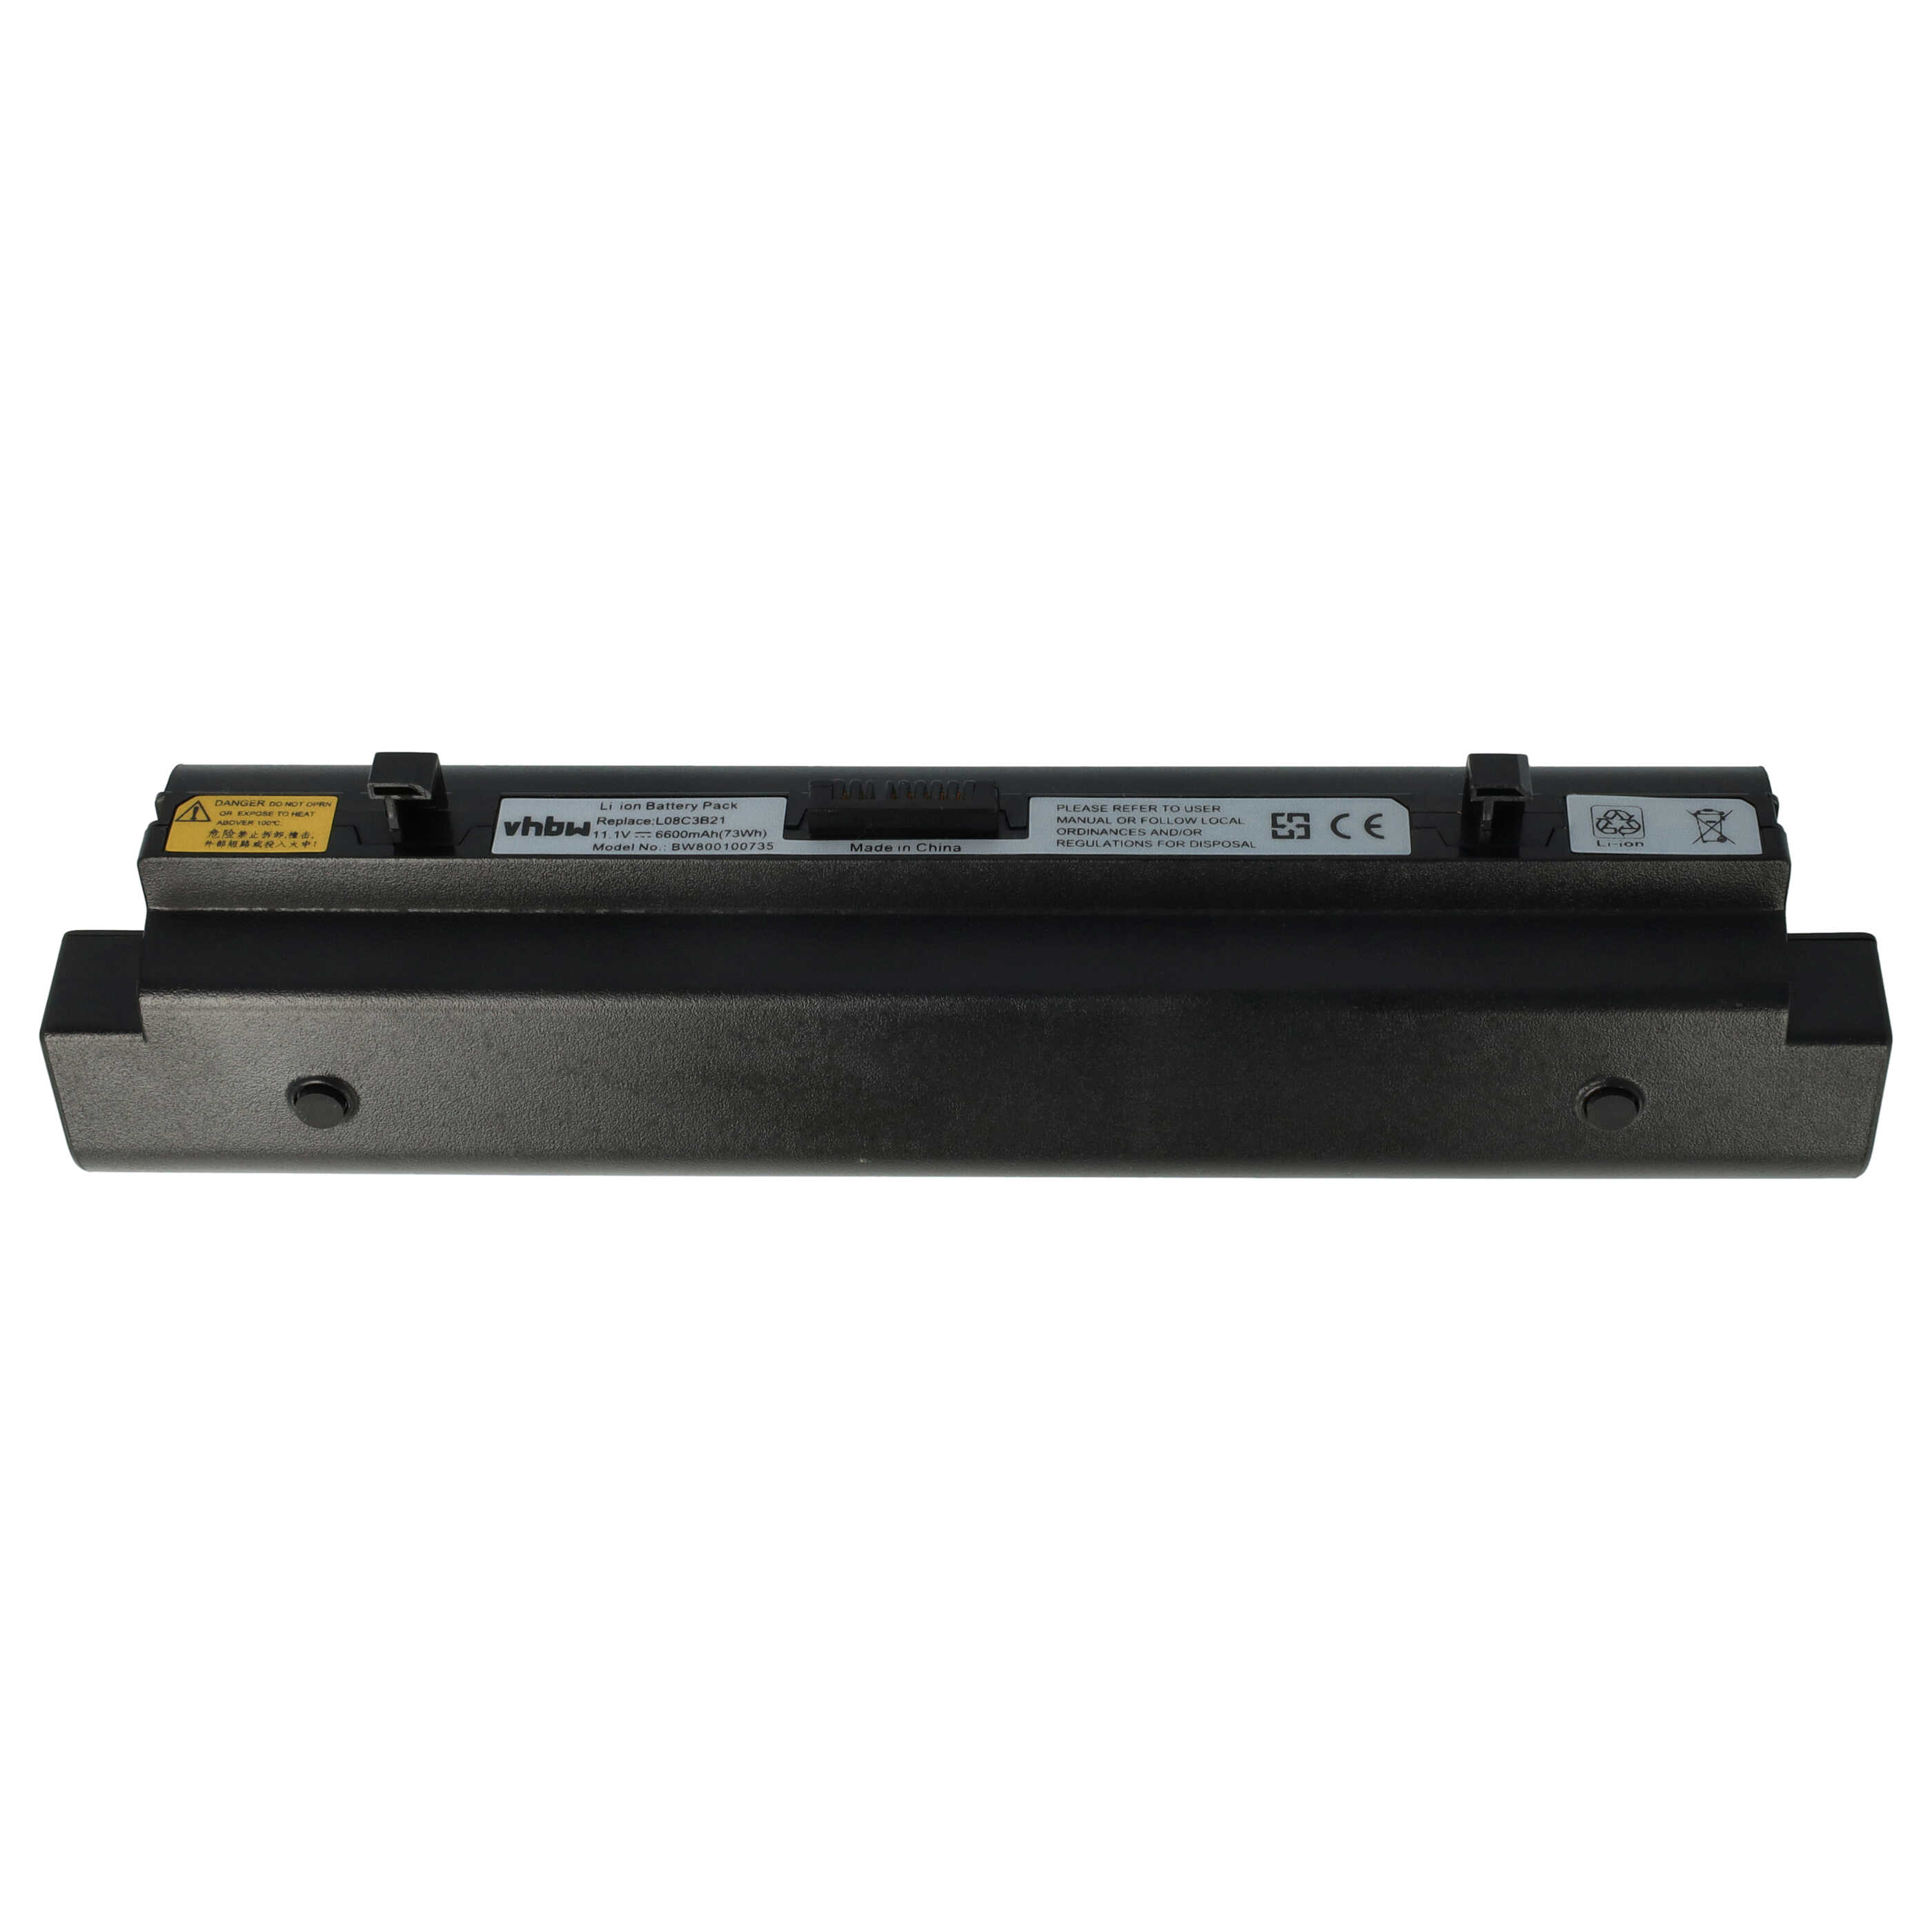 Akumulator do laptopa zamiennik Lenovo L08C3B21 - 6600 mAh 11,1 V Li-Ion, czarny